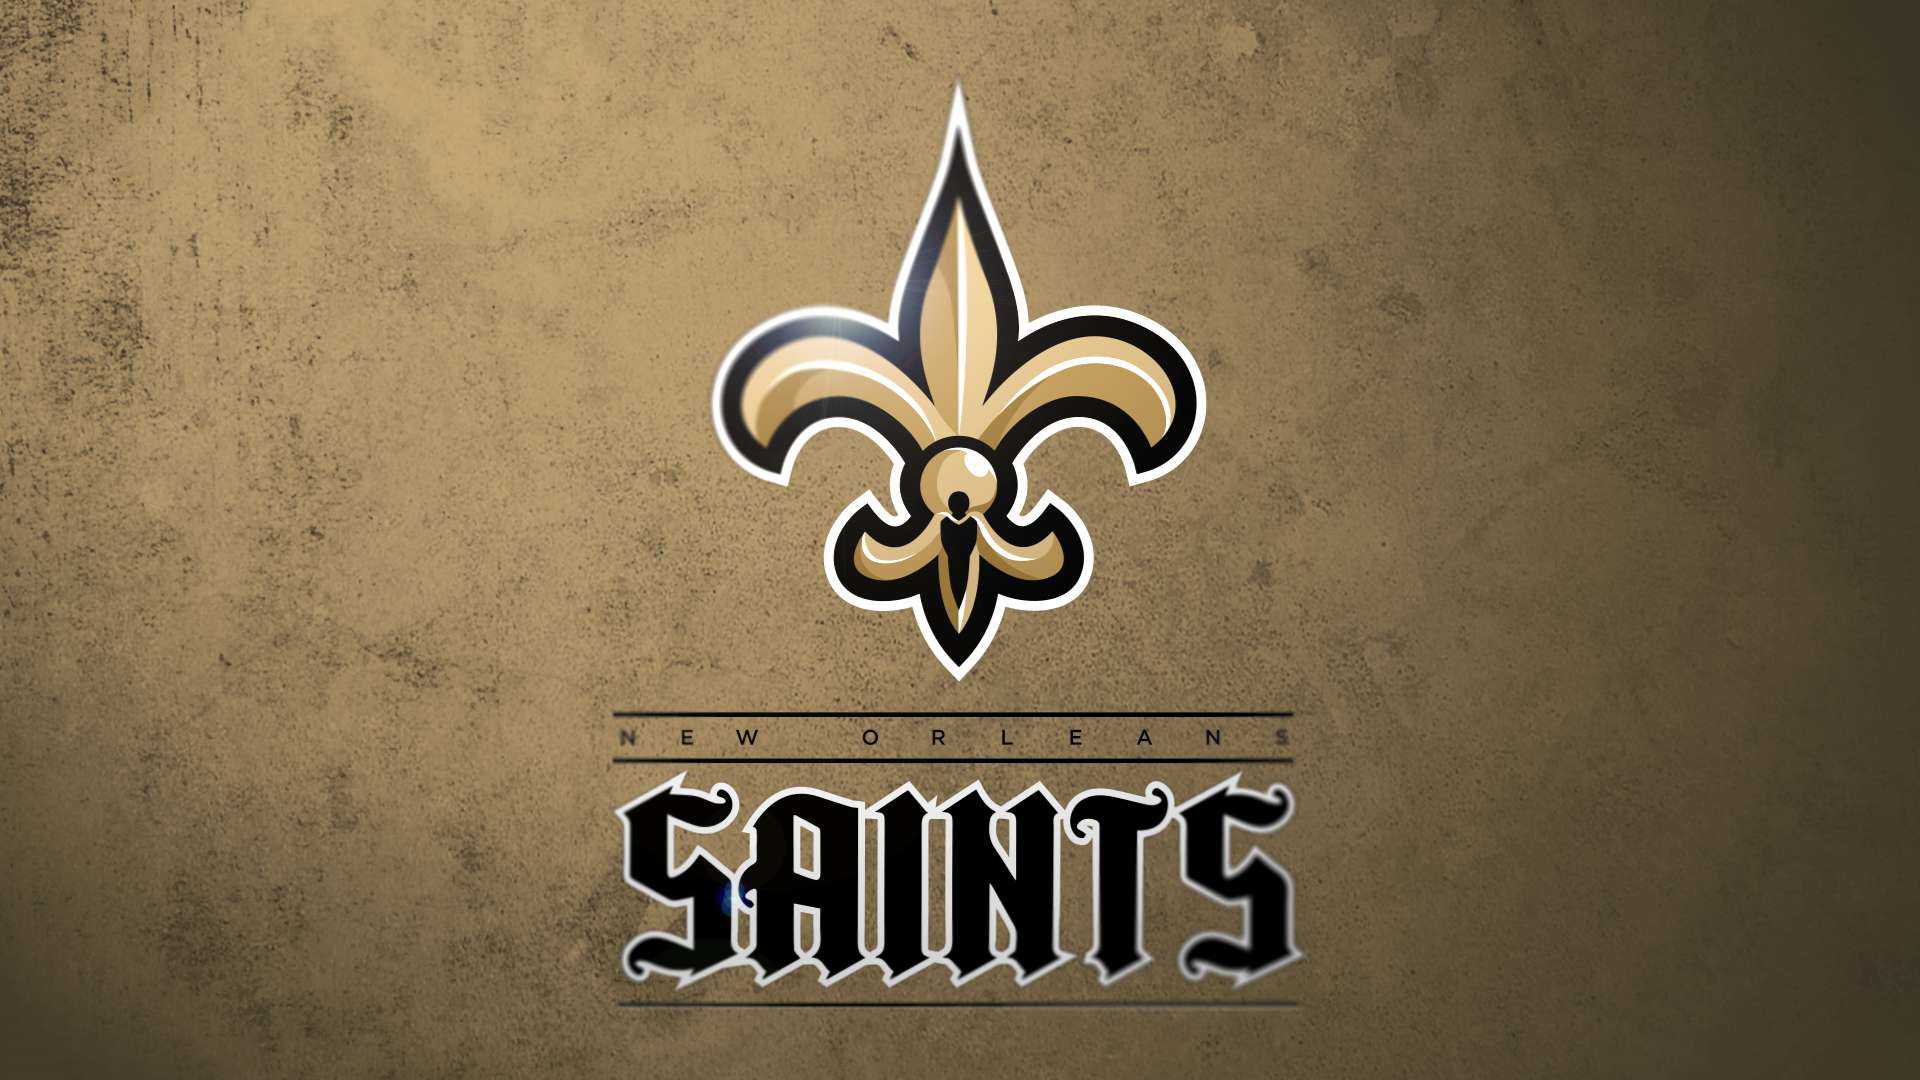 Wallpaper New Orleans Saints